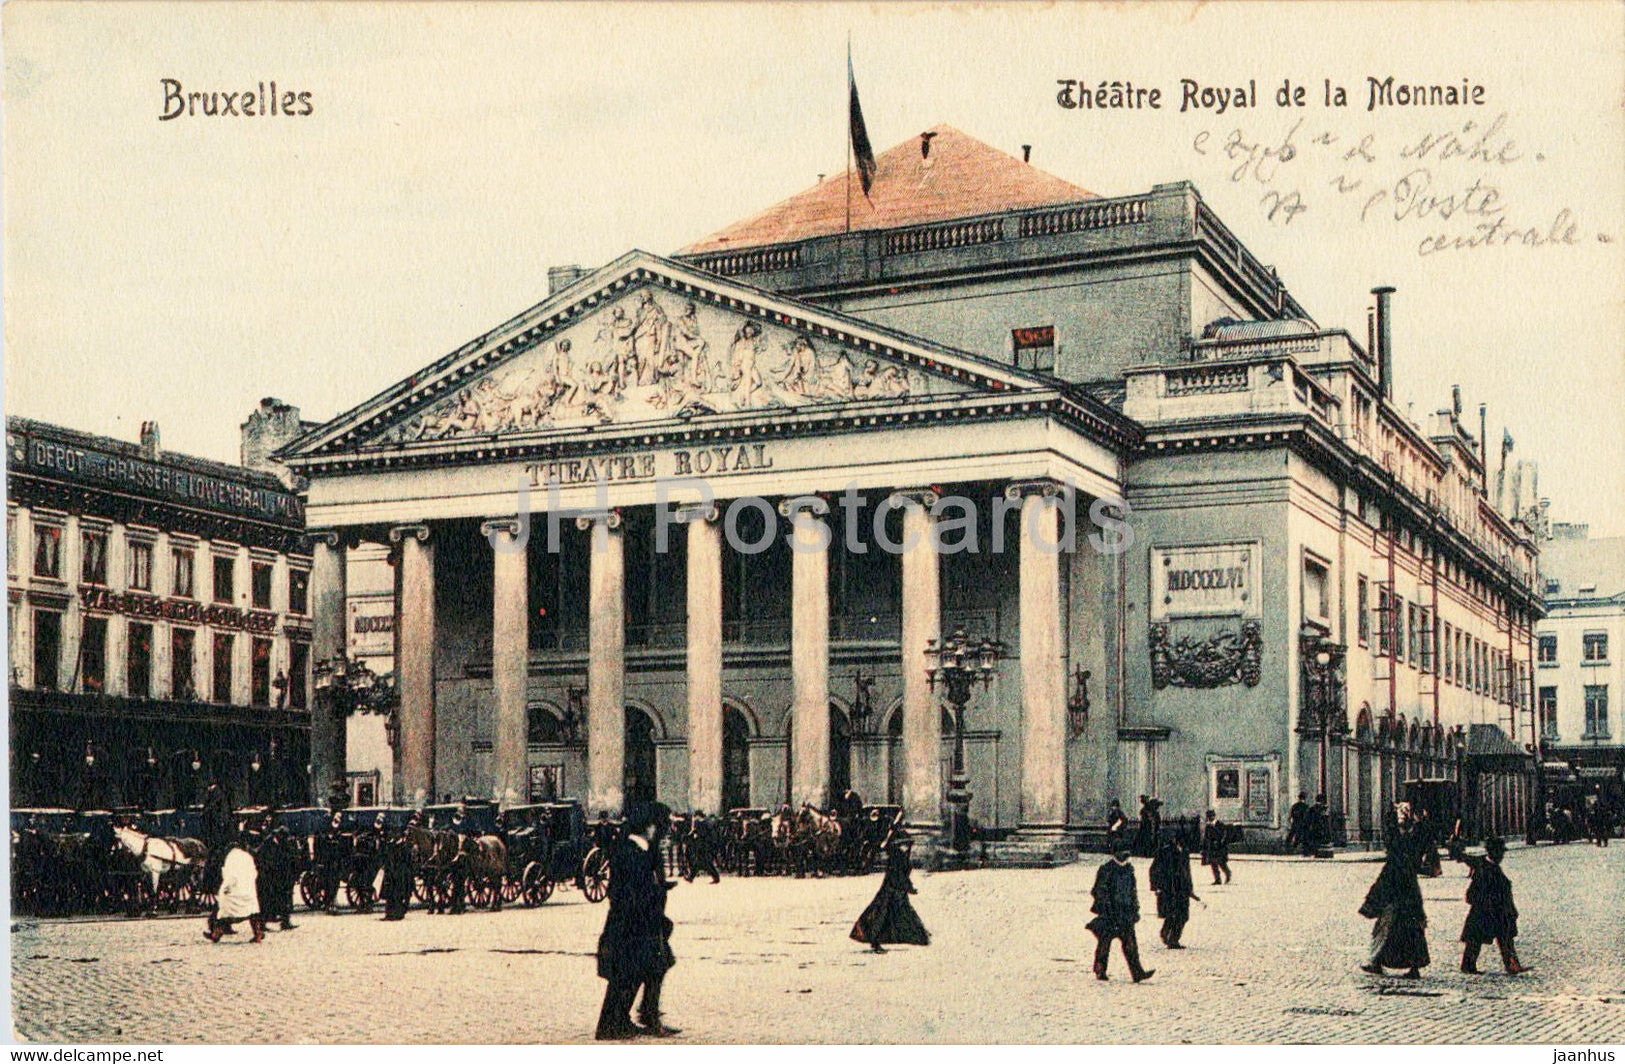 Bruxelles - Brussels - Theatre Royal de la Monnaie - old postcard - Belgium - used - JH Postcards